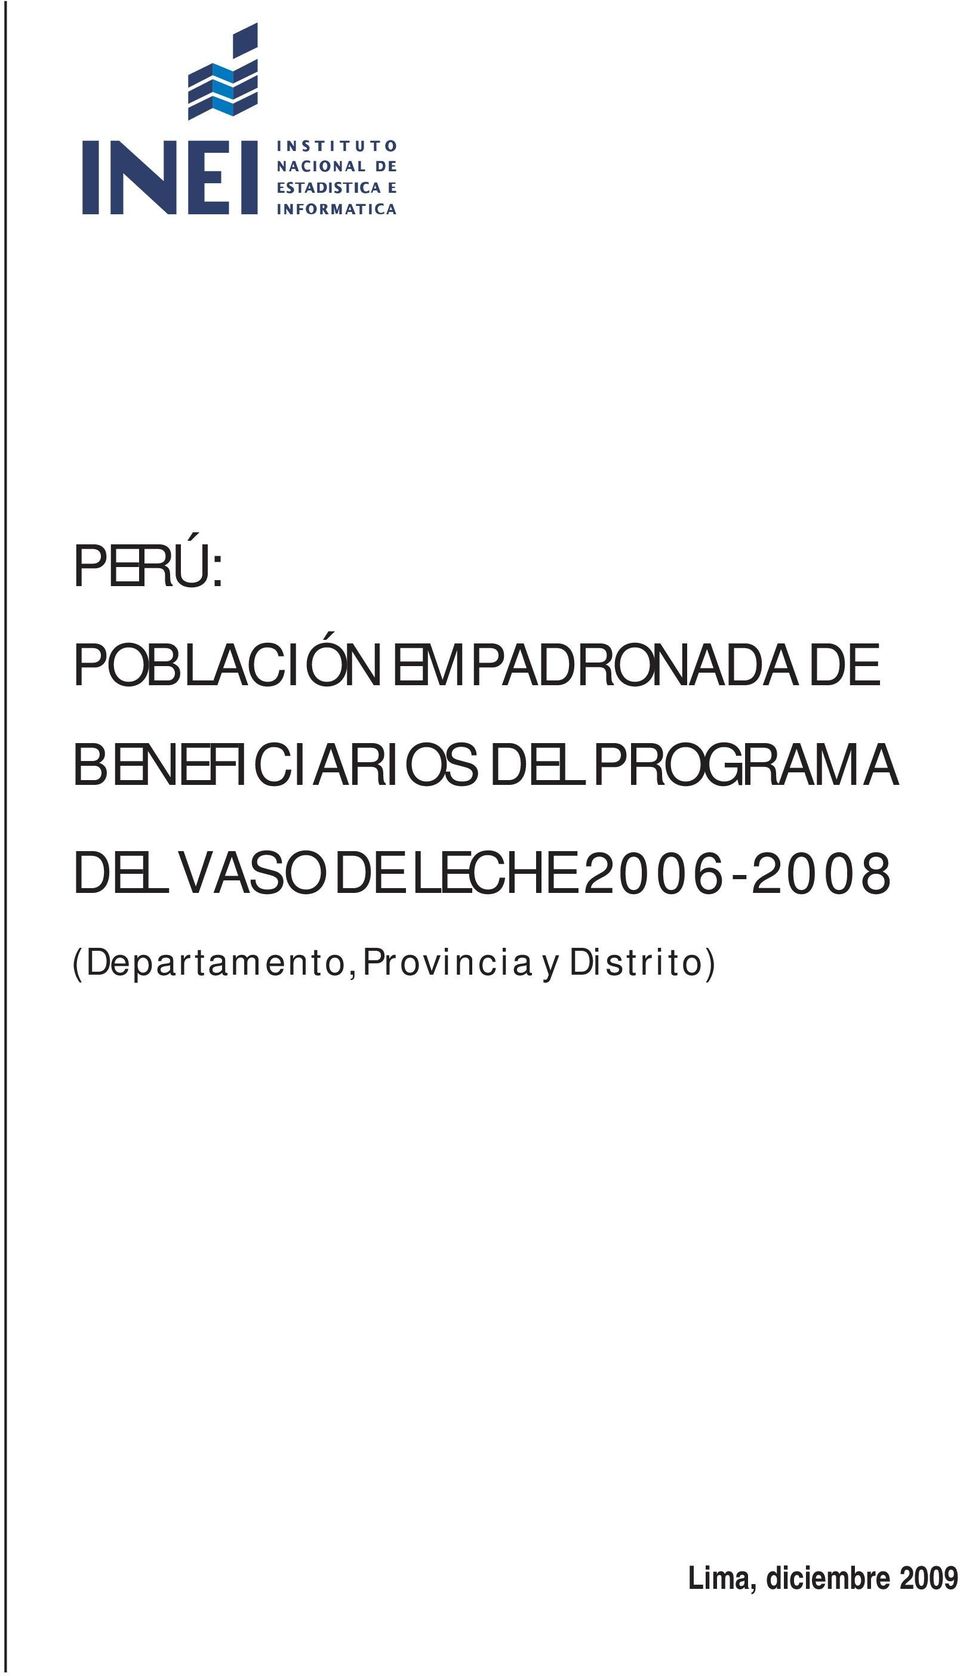 DEL VASO DE LECHE 2006-2008 (